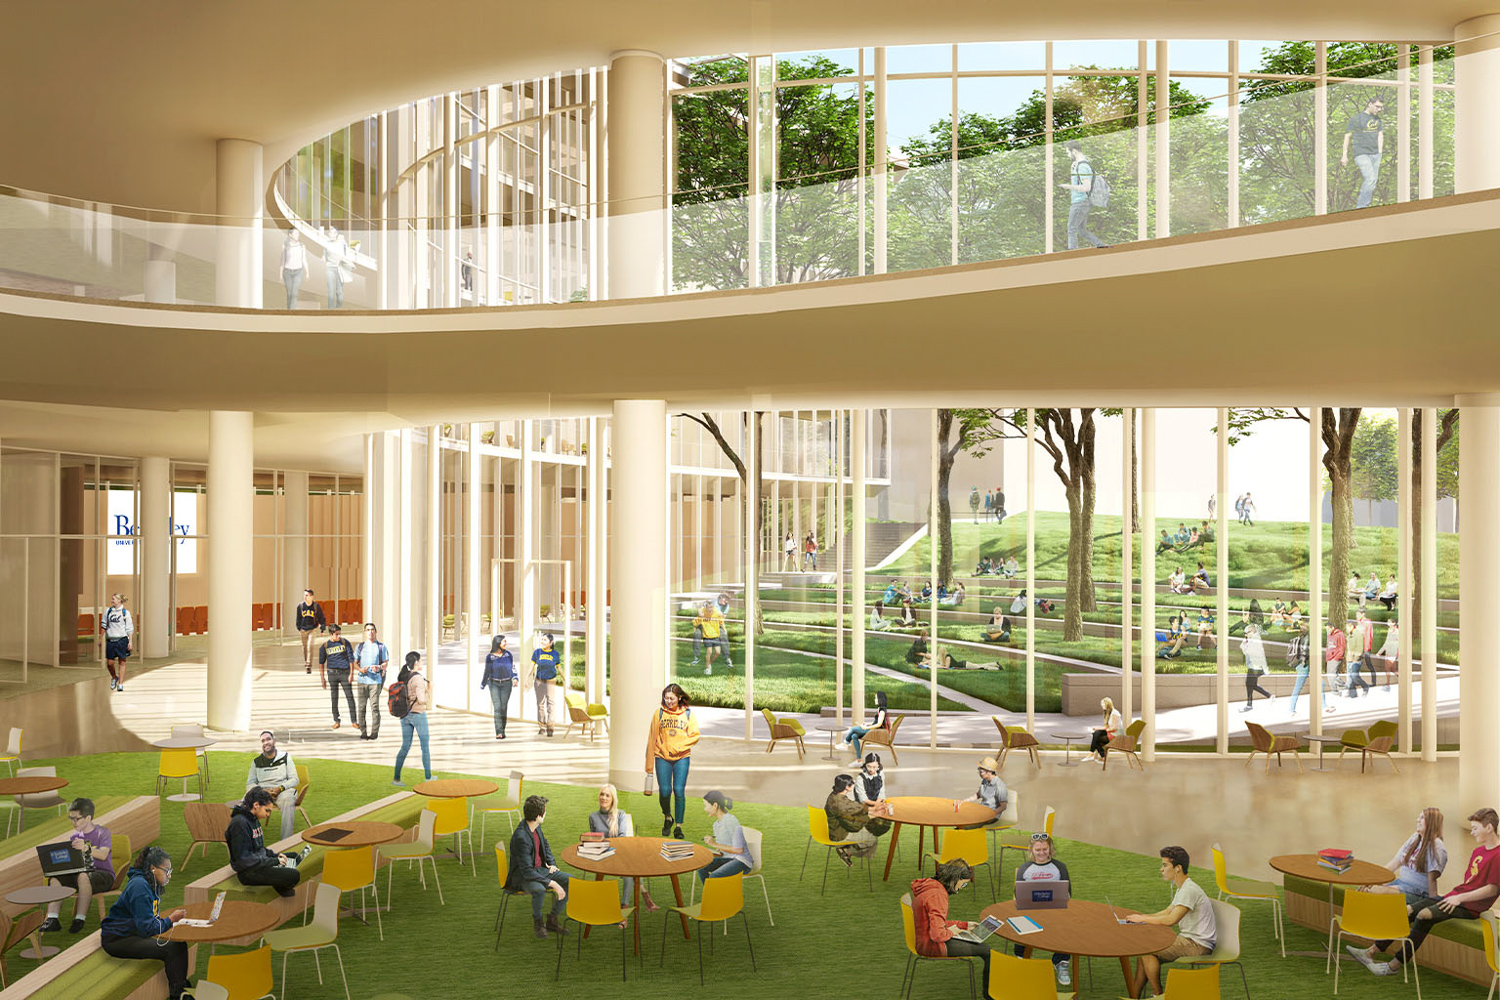 UC Berkeley’s Gateway garden atrium, rendering by Weiss Manfredi